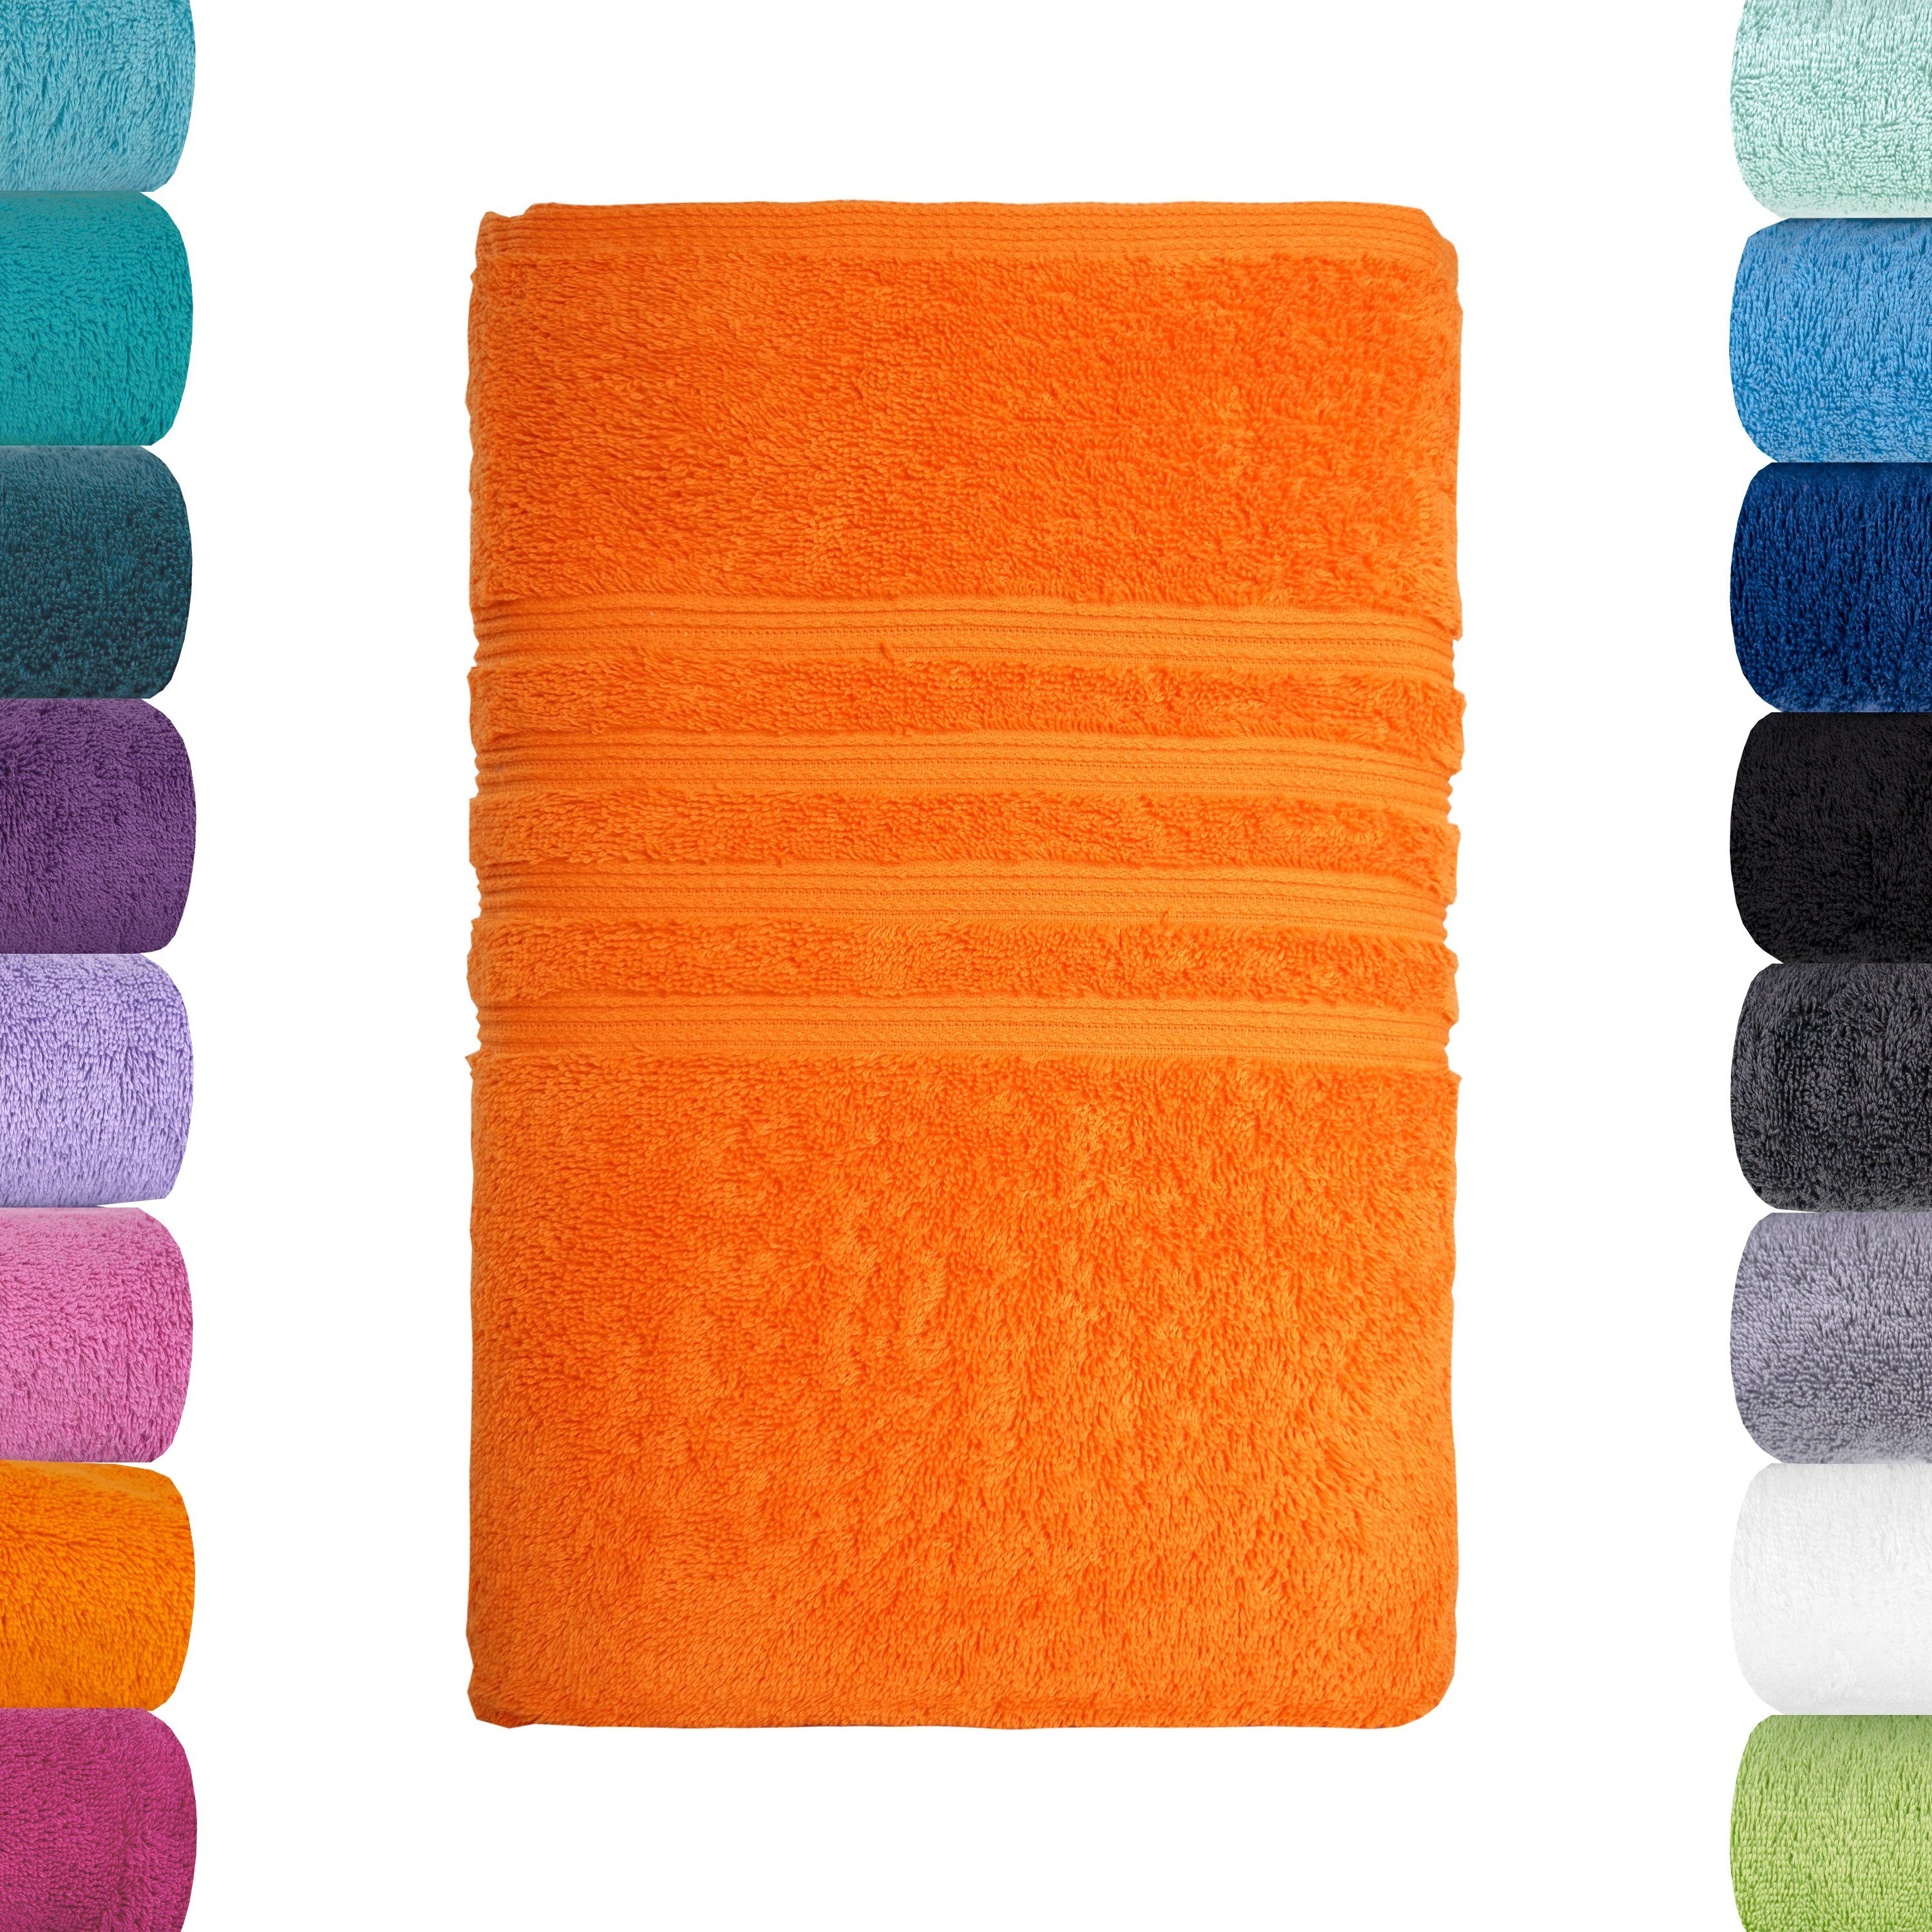 Bio-Baumwolle Serie Handtuch Lavea aus Orange 100% 100cm, x Bali, 50